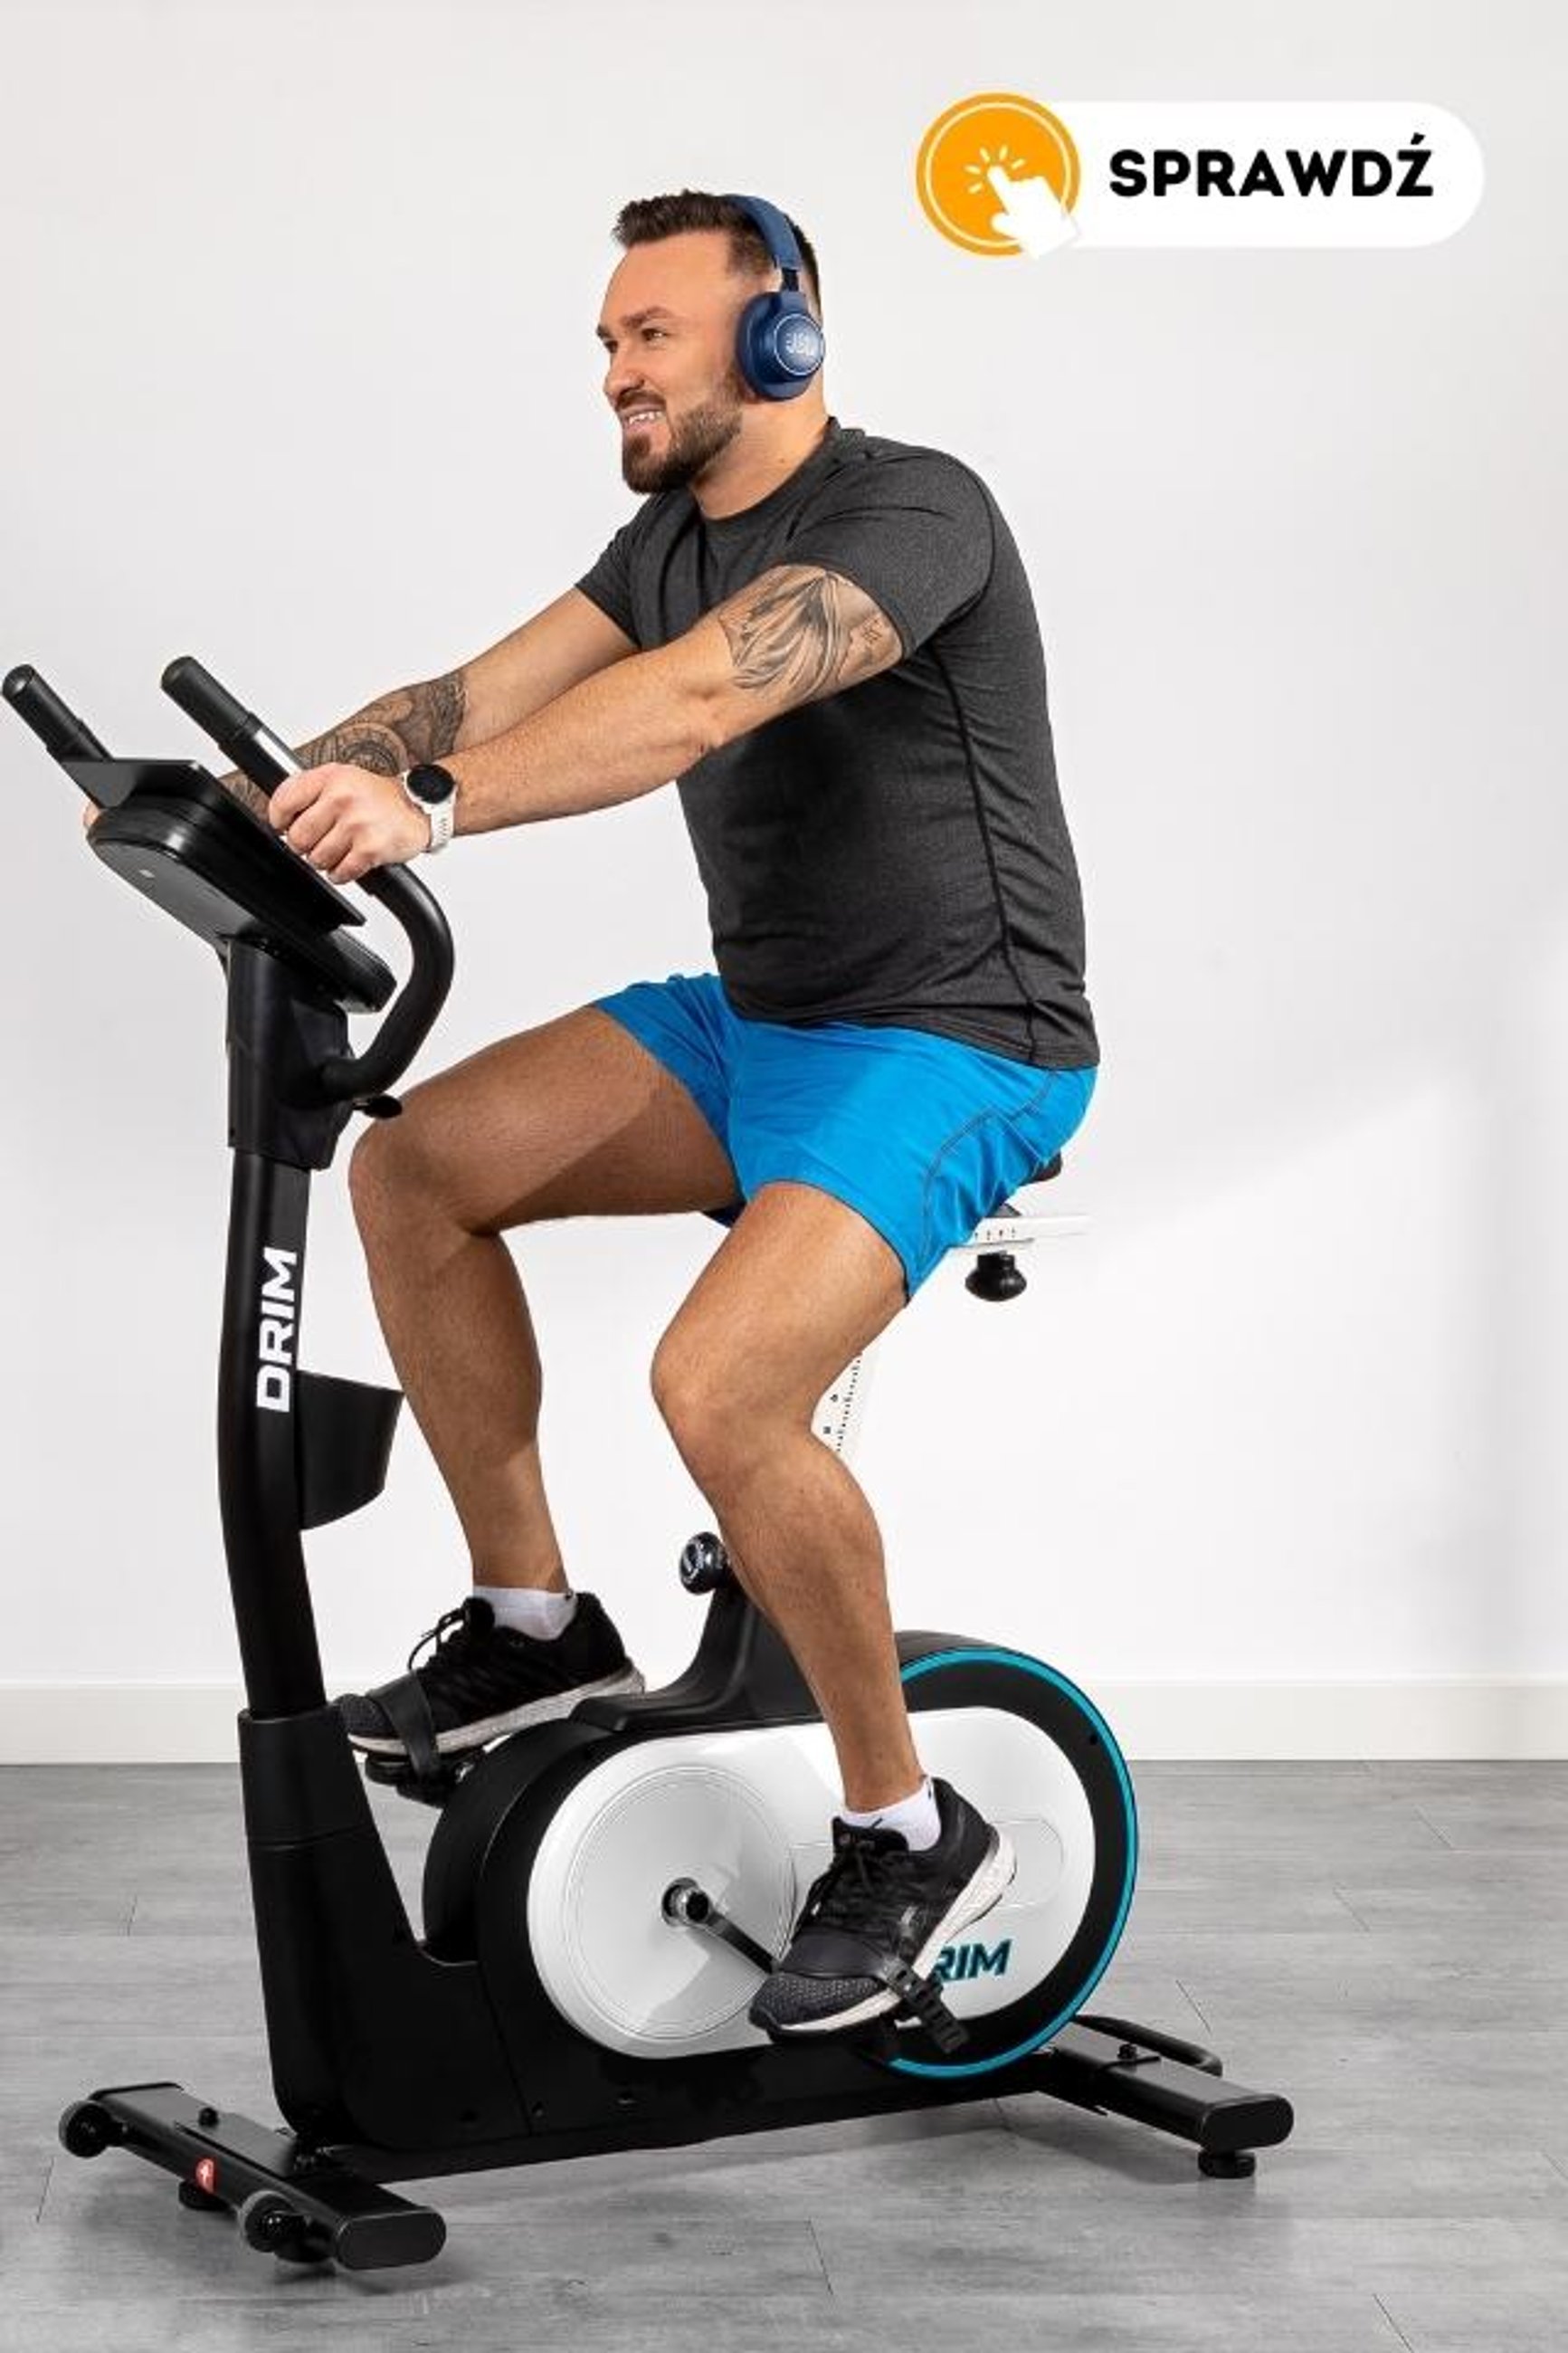 model ćwiczący na rowerze HS-250H Drim marki Hop-Sport, słuchający muzyki